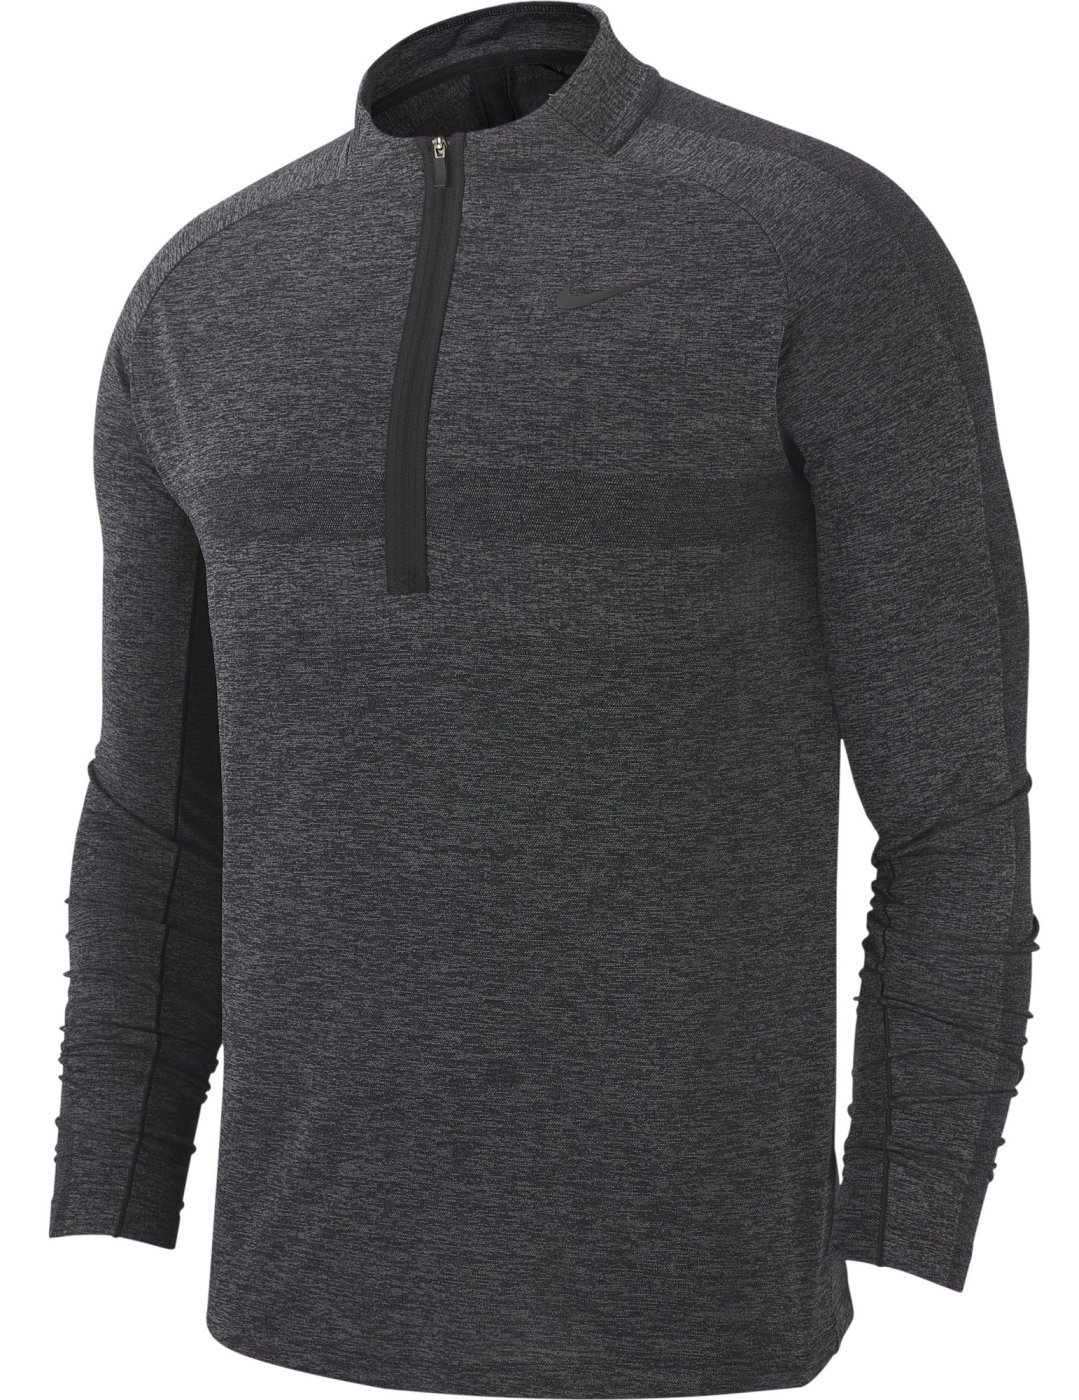 Φούτερ/Πουλόβερ Nike Dry Knit Statement 1/2 Zip Mens Sweater Black/Dark Grey L